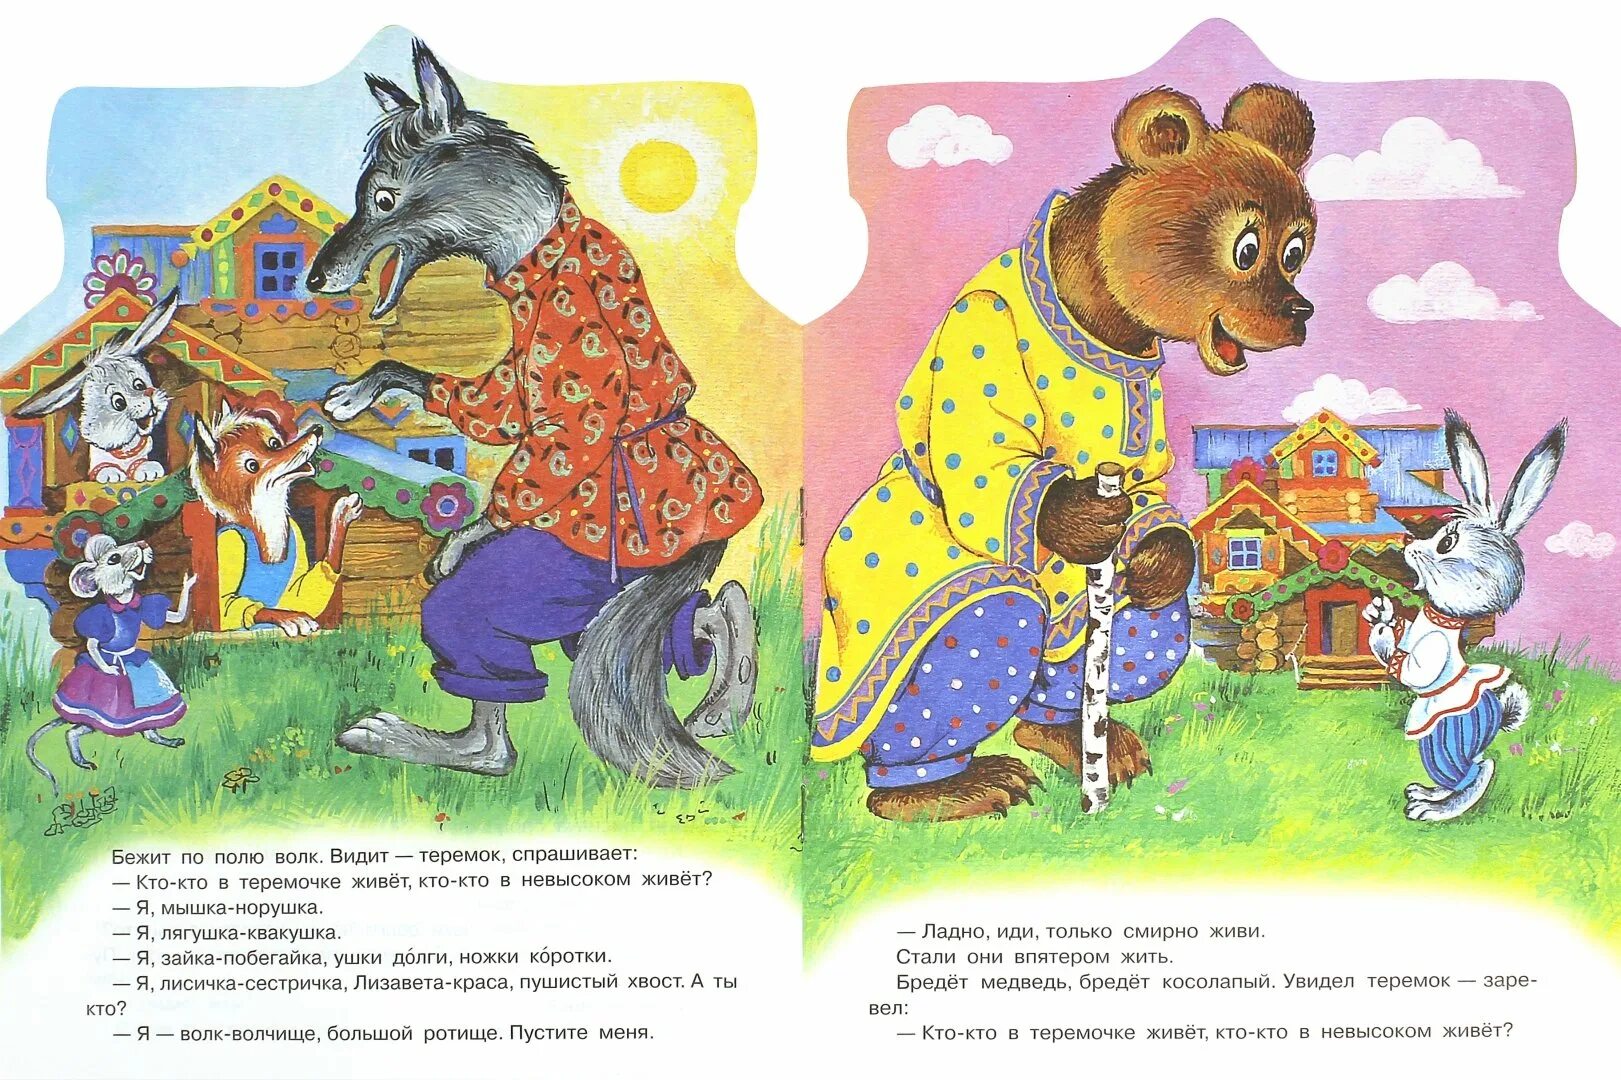 Иллюстрация книги Теремок. Книга Теремок. Медведь из сказки Теремок. Теремок картинки для детей.